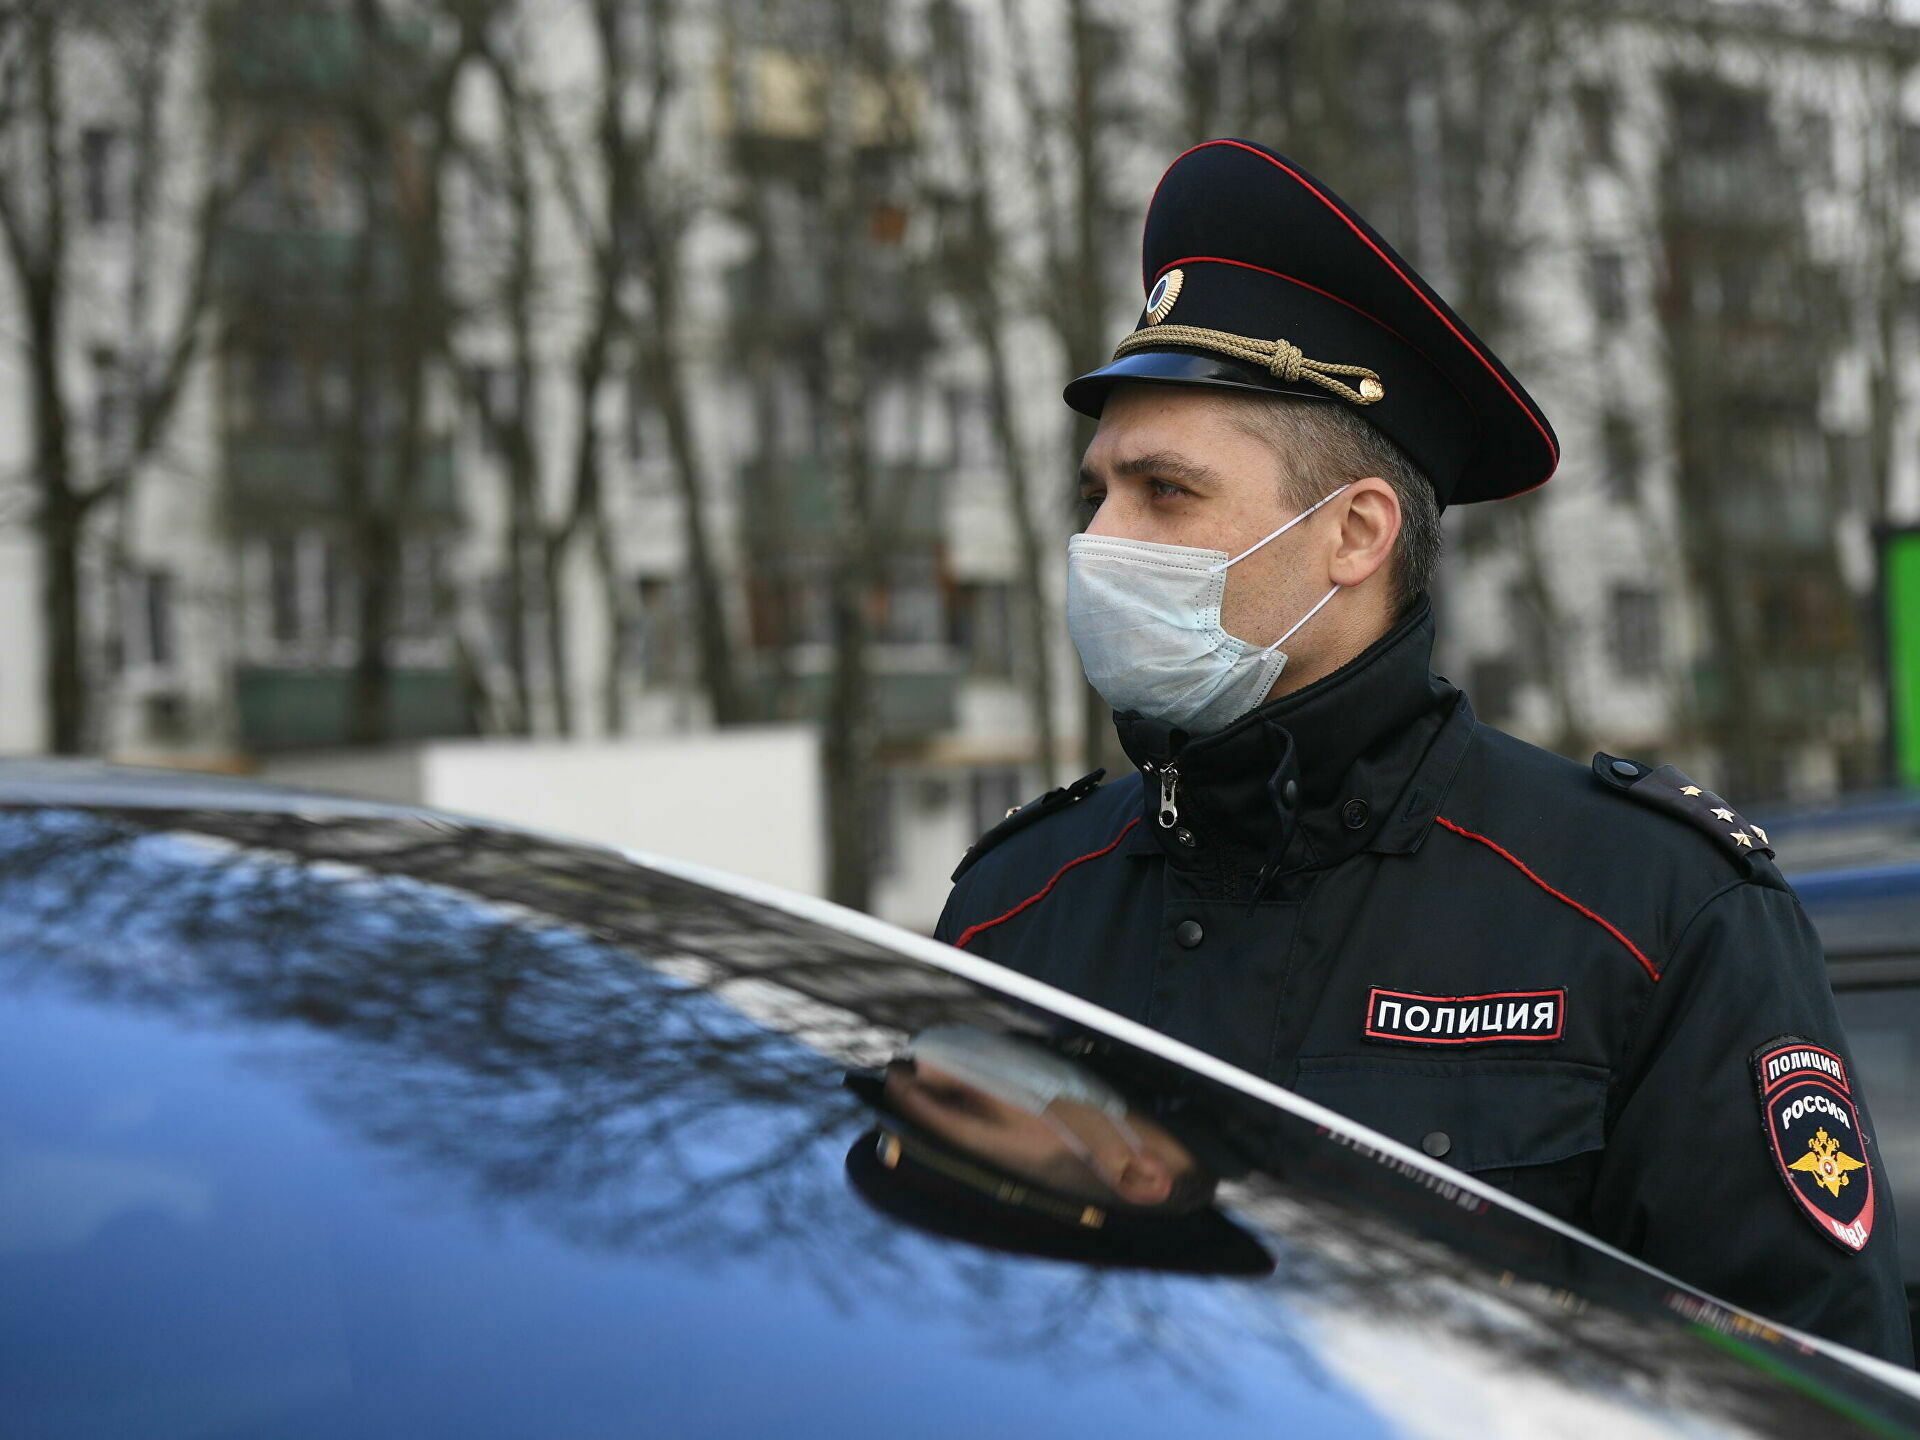 В Москве завели дело о хулиганстве из-за баннера "С днем ЧКиста"